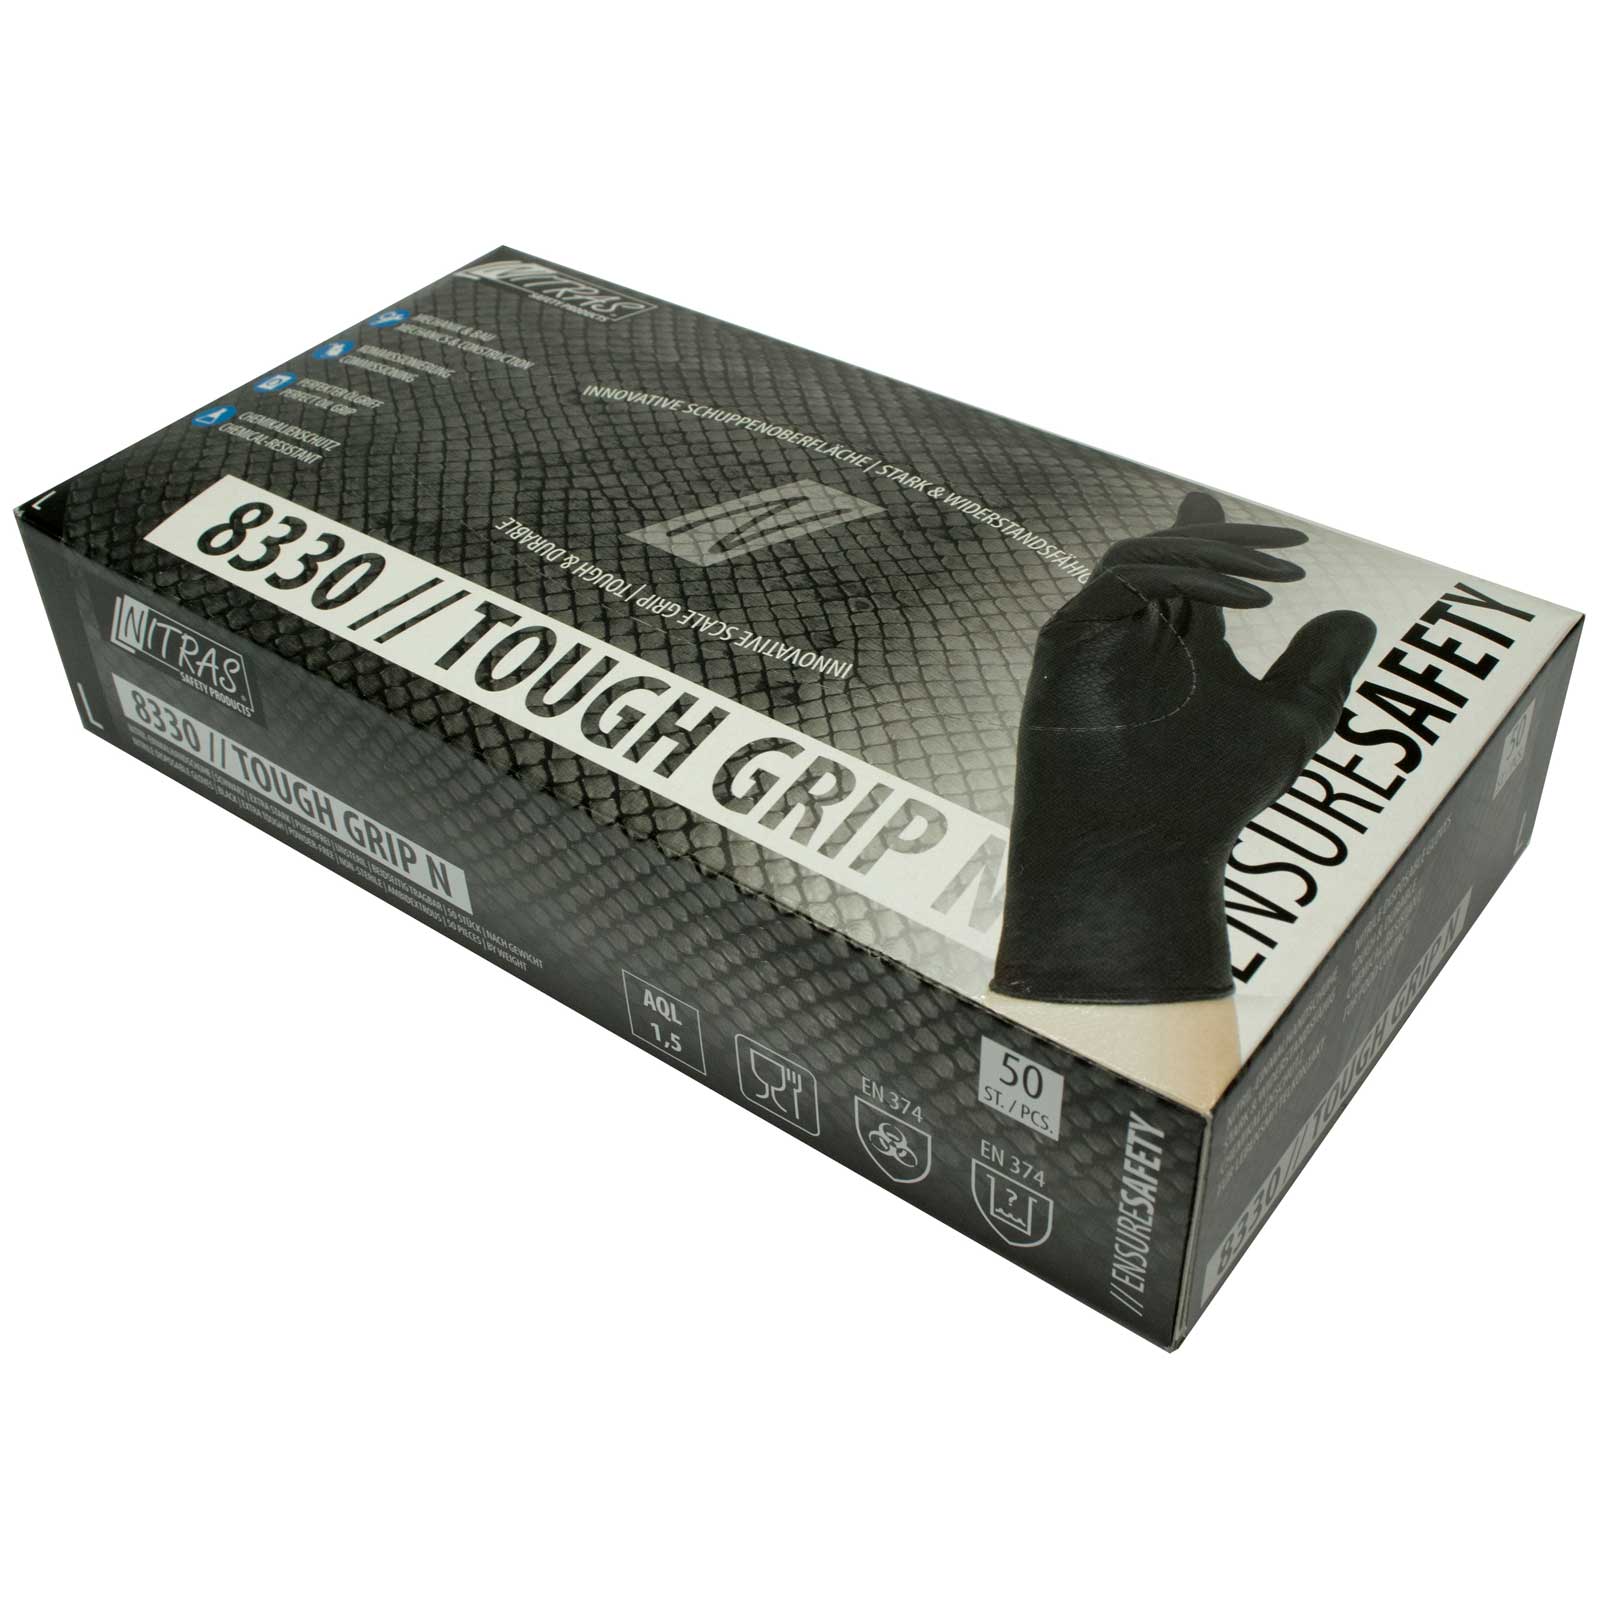 NITRAS Einmalhandschuhe Nitril Tough Grip N 8330 - puderfrei - Box à 50 Stück Größe:10 von NITRAS